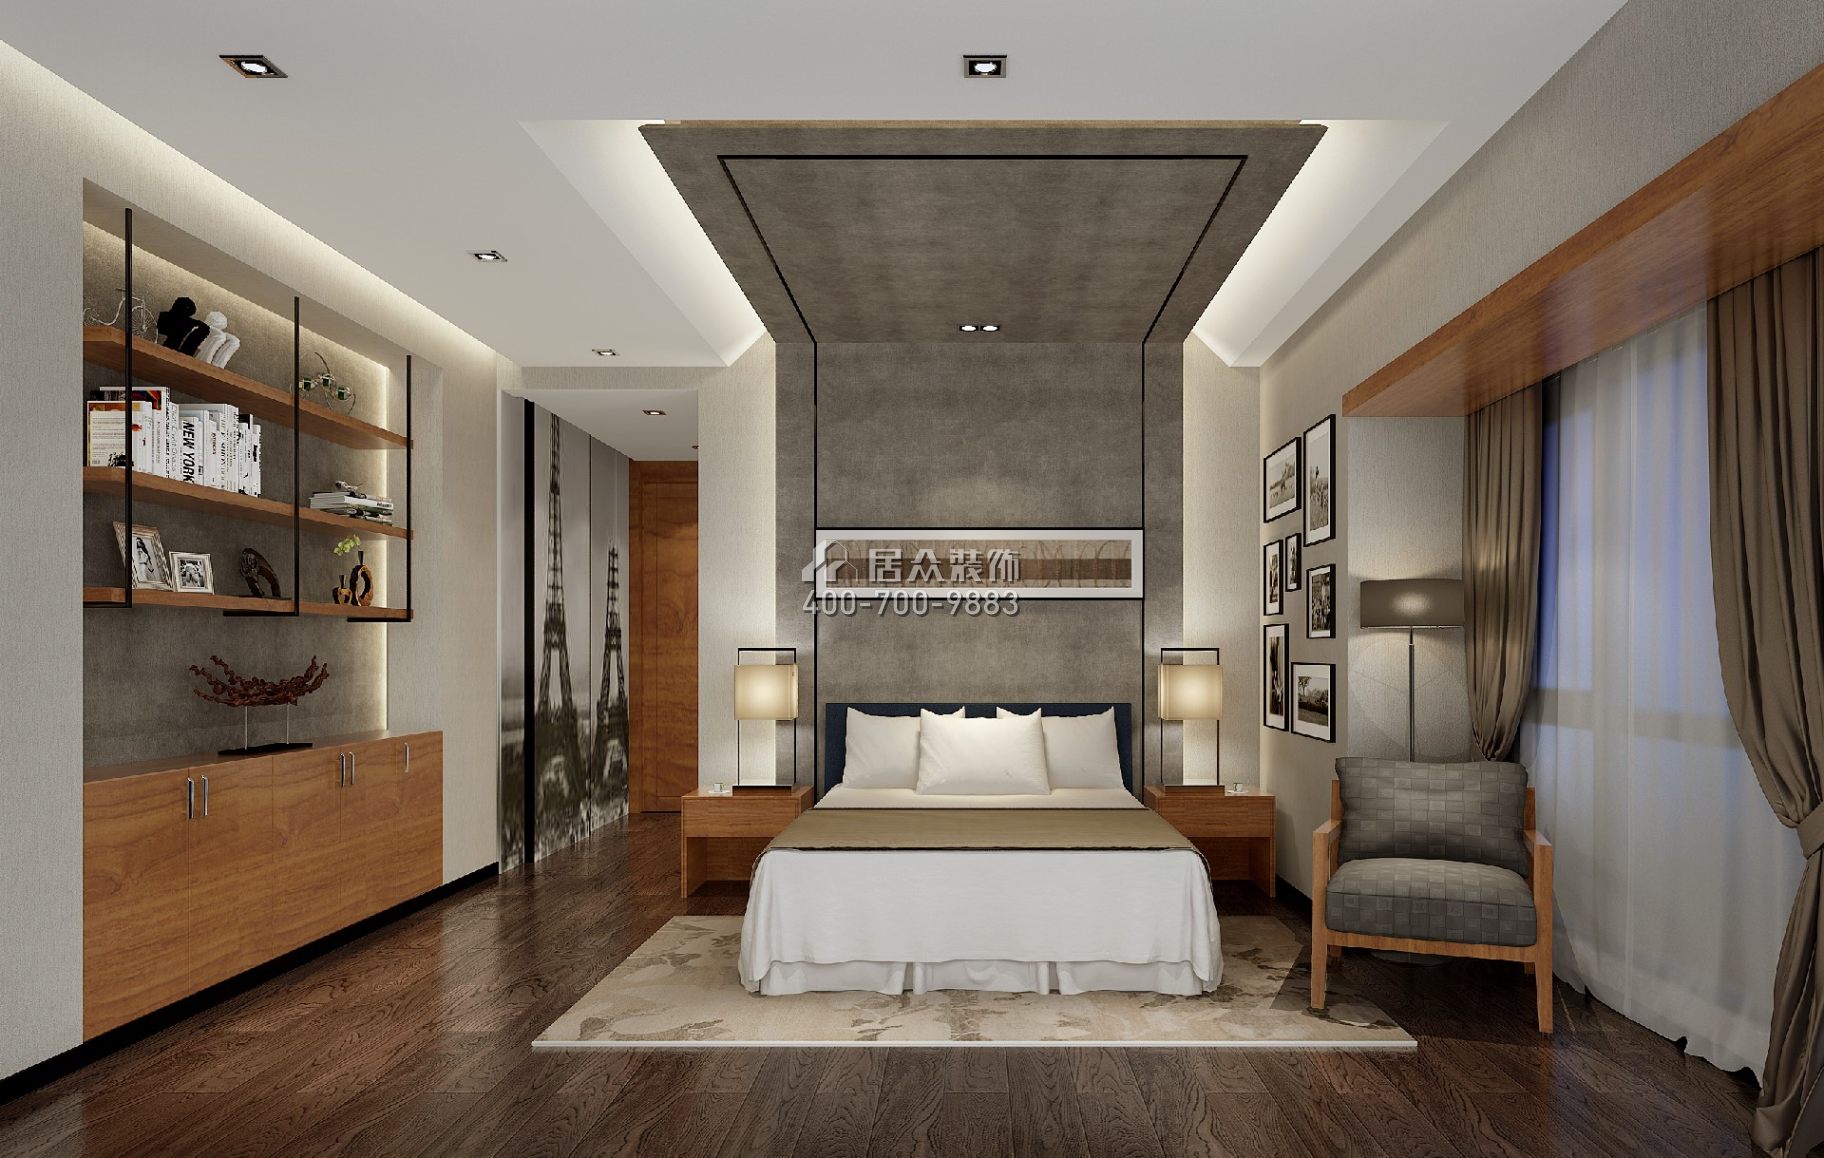 半島城邦二期180平方米中式風格平層戶型臥室裝修效果圖